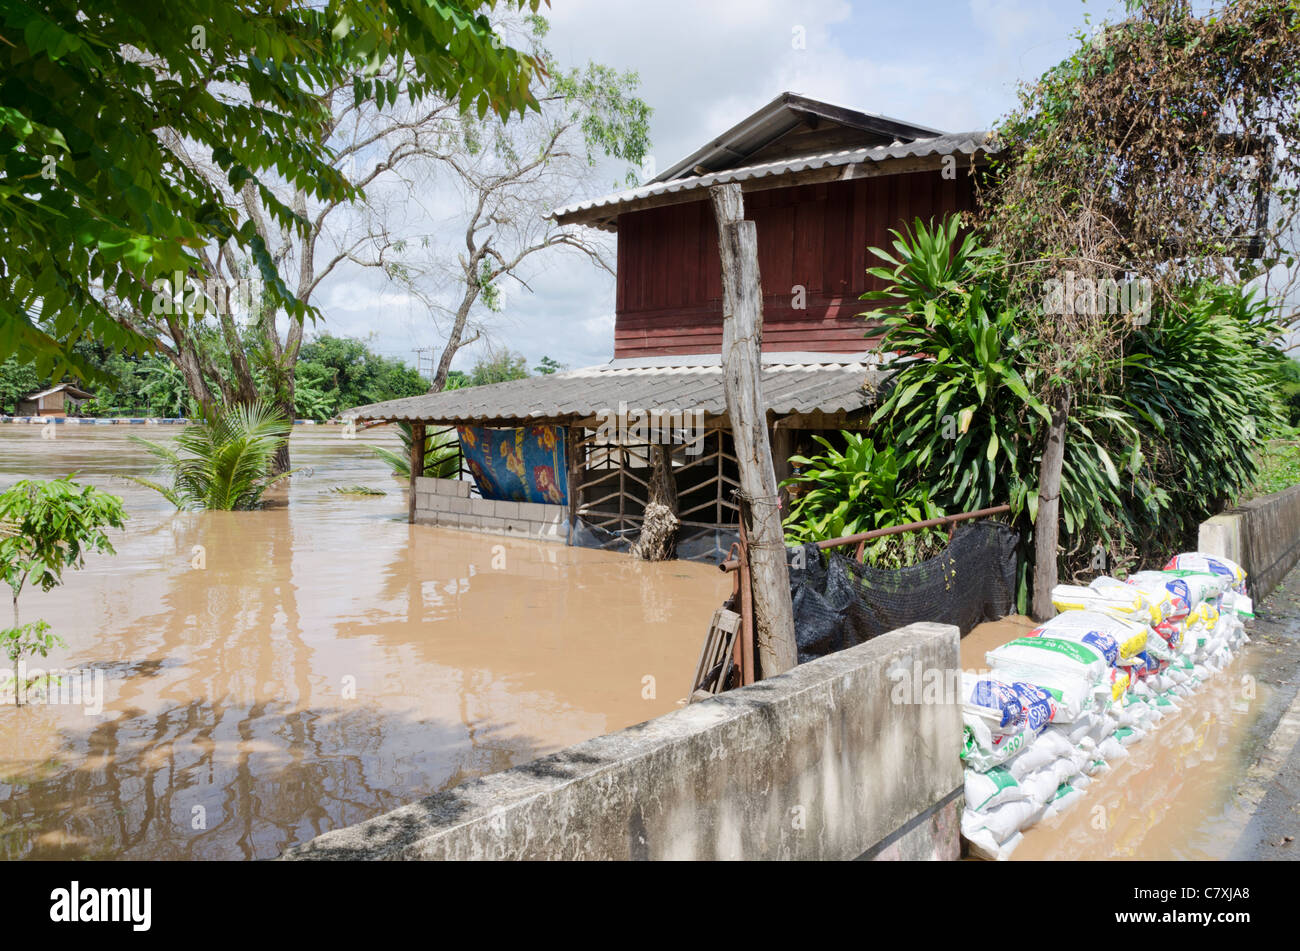 Maison de deux étages inondés avec barrière de béton et de sacs de bloquer les eaux au sud de la rivière Ping à Chiang Mai Thaïlande Banque D'Images